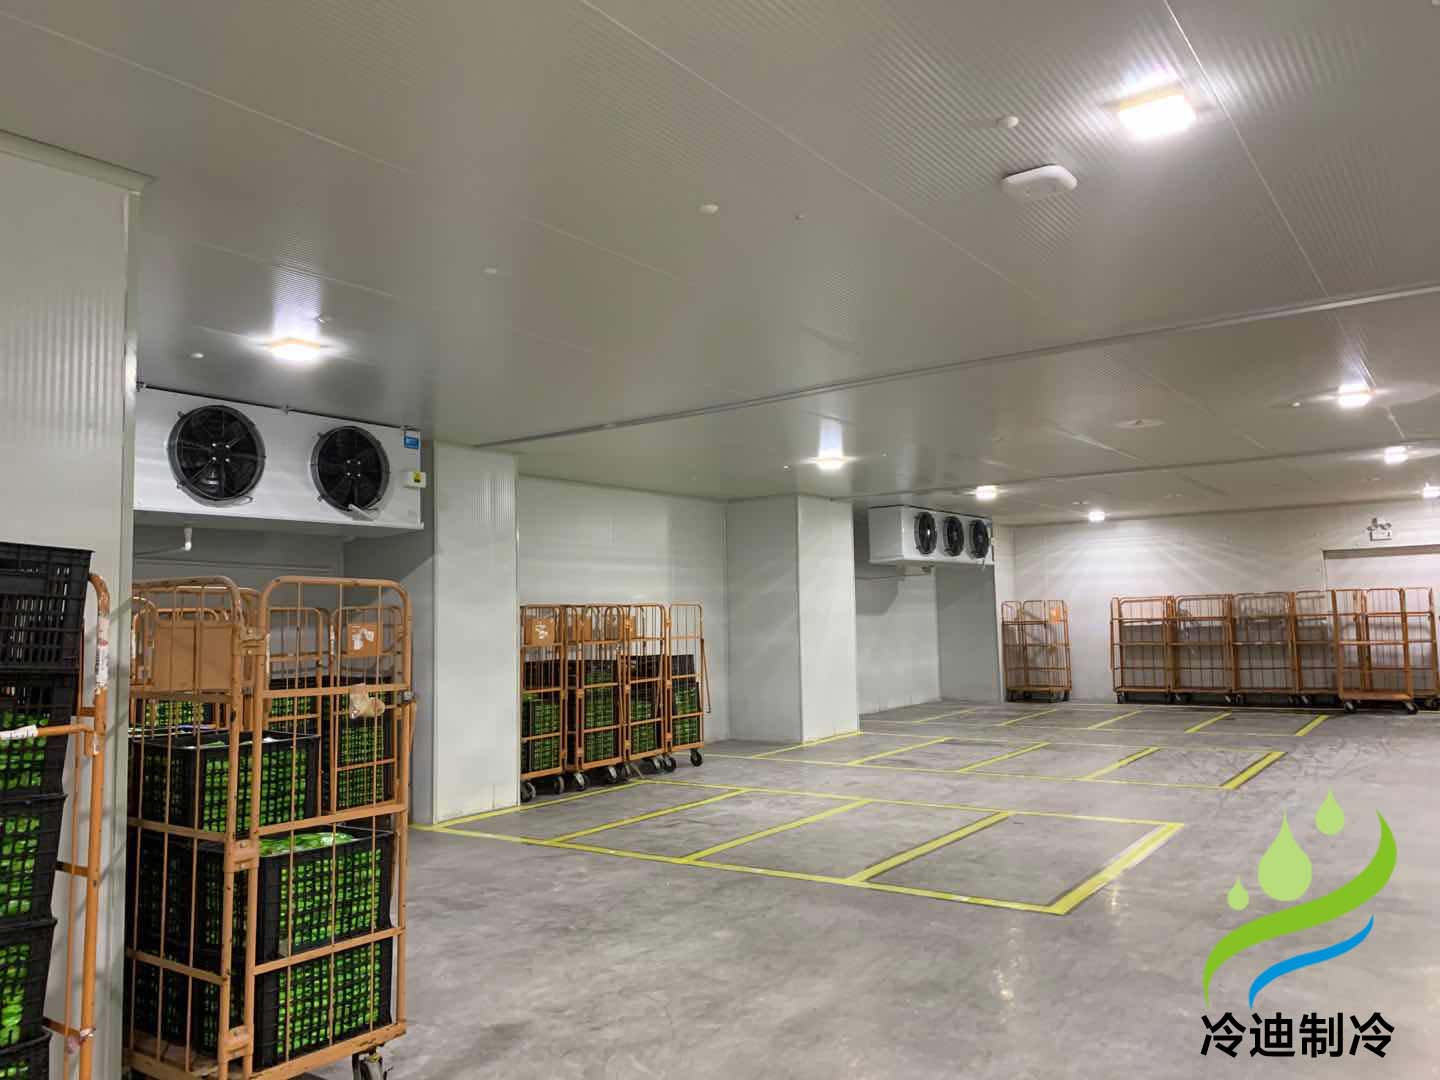 上海天天果園7320m3大型食品電商冷庫工程及舊庫檢修項目